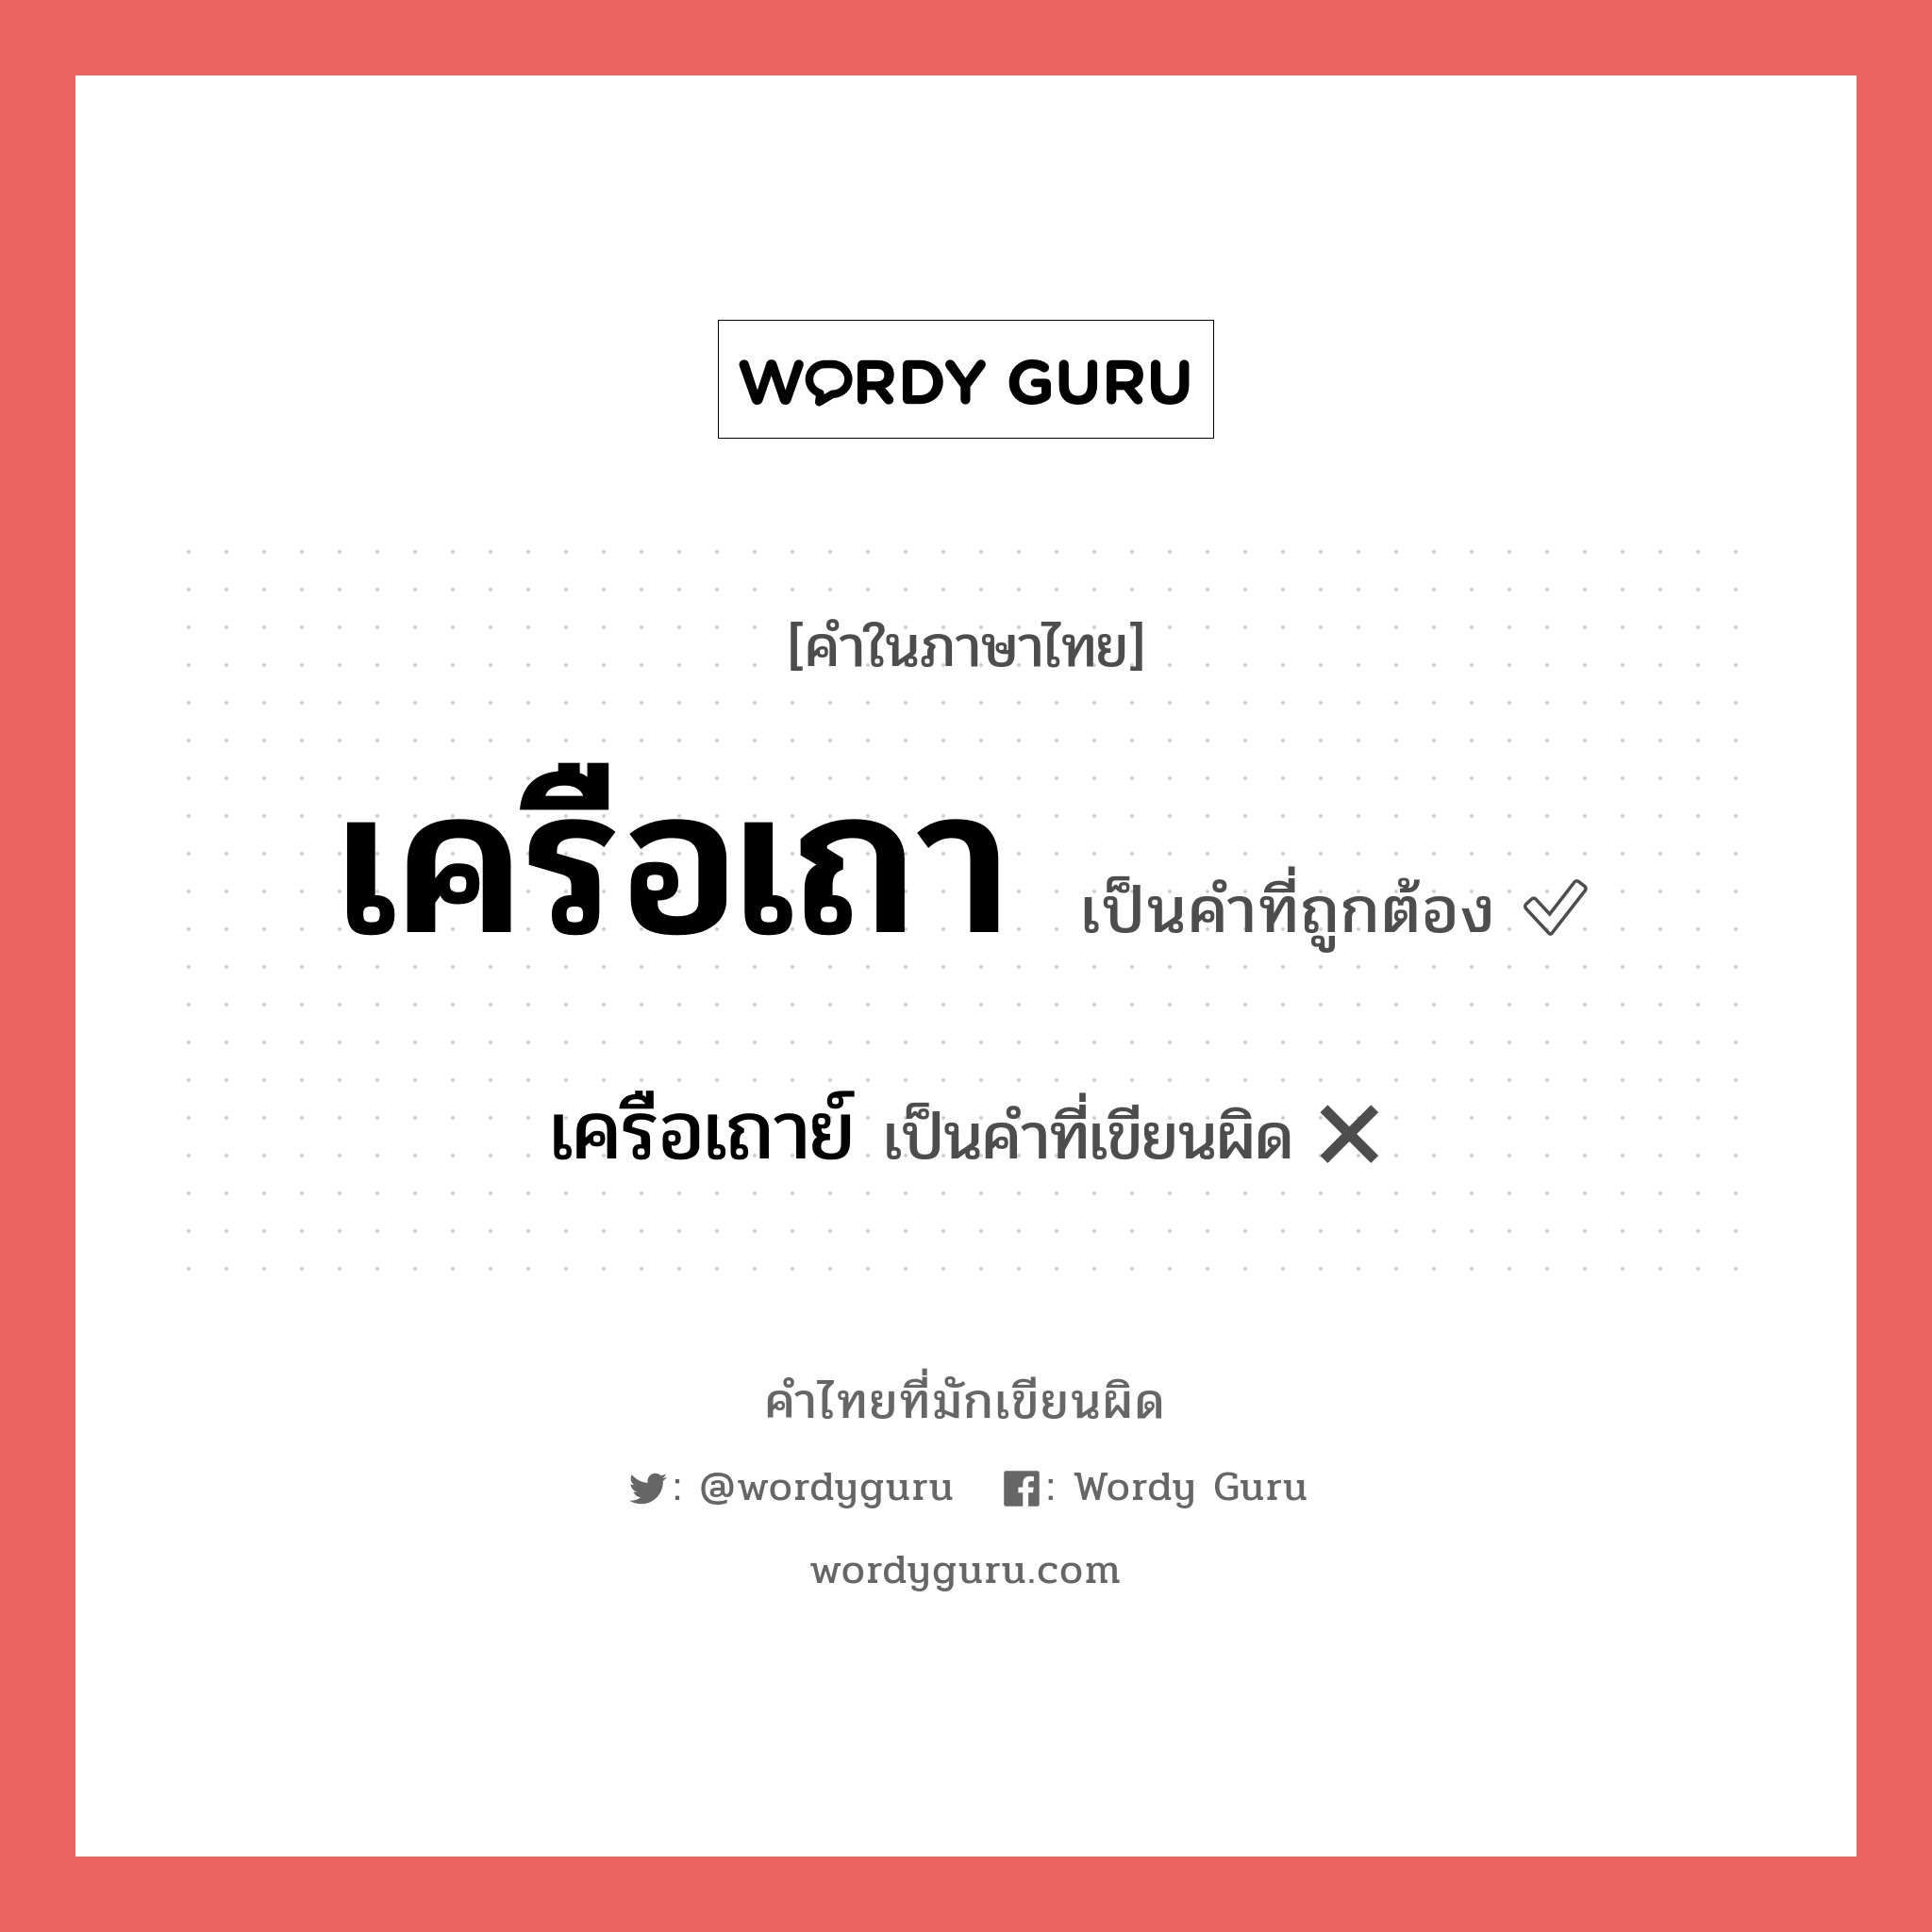 เครือเถาย์ หรือ เครือเถา คำไหนเขียนถูก?, คำในภาษาไทยที่มักเขียนผิด เครือเถาย์ คำที่ผิด ❌ เครือเถา